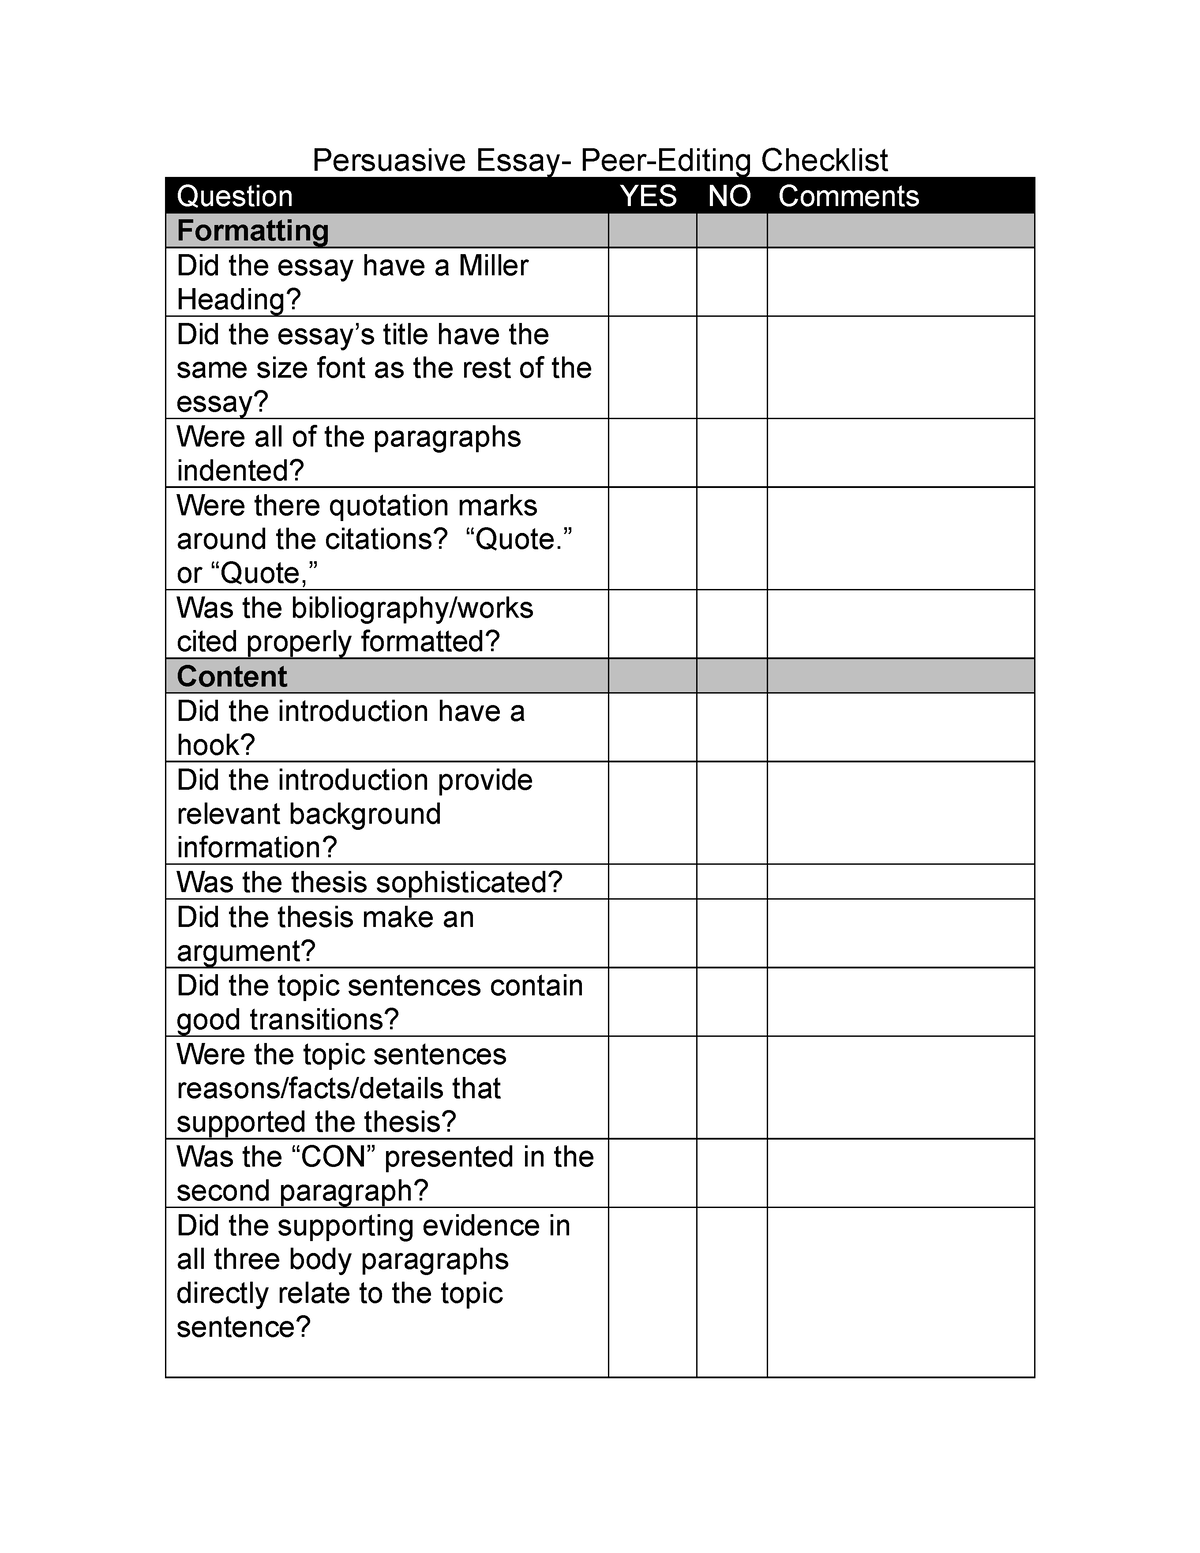 peer editing checklist persuasive essay